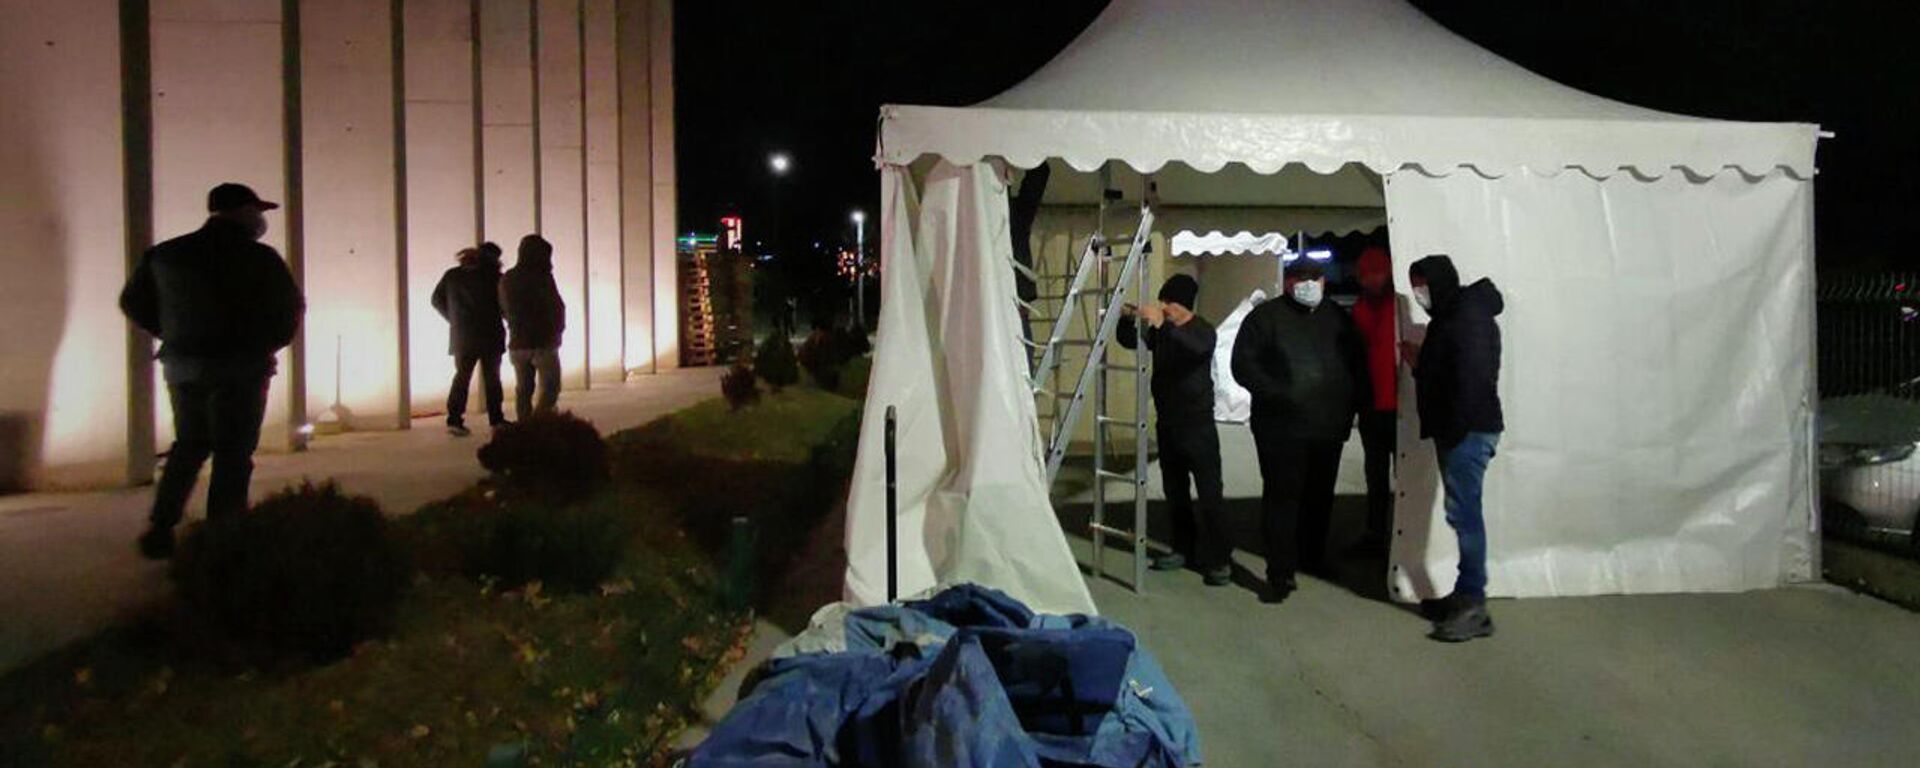 Палатки для голодающих у офиса ЕНД установили активисты Нацдвижения - видео - Sputnik Грузия, 1920, 22.12.2021